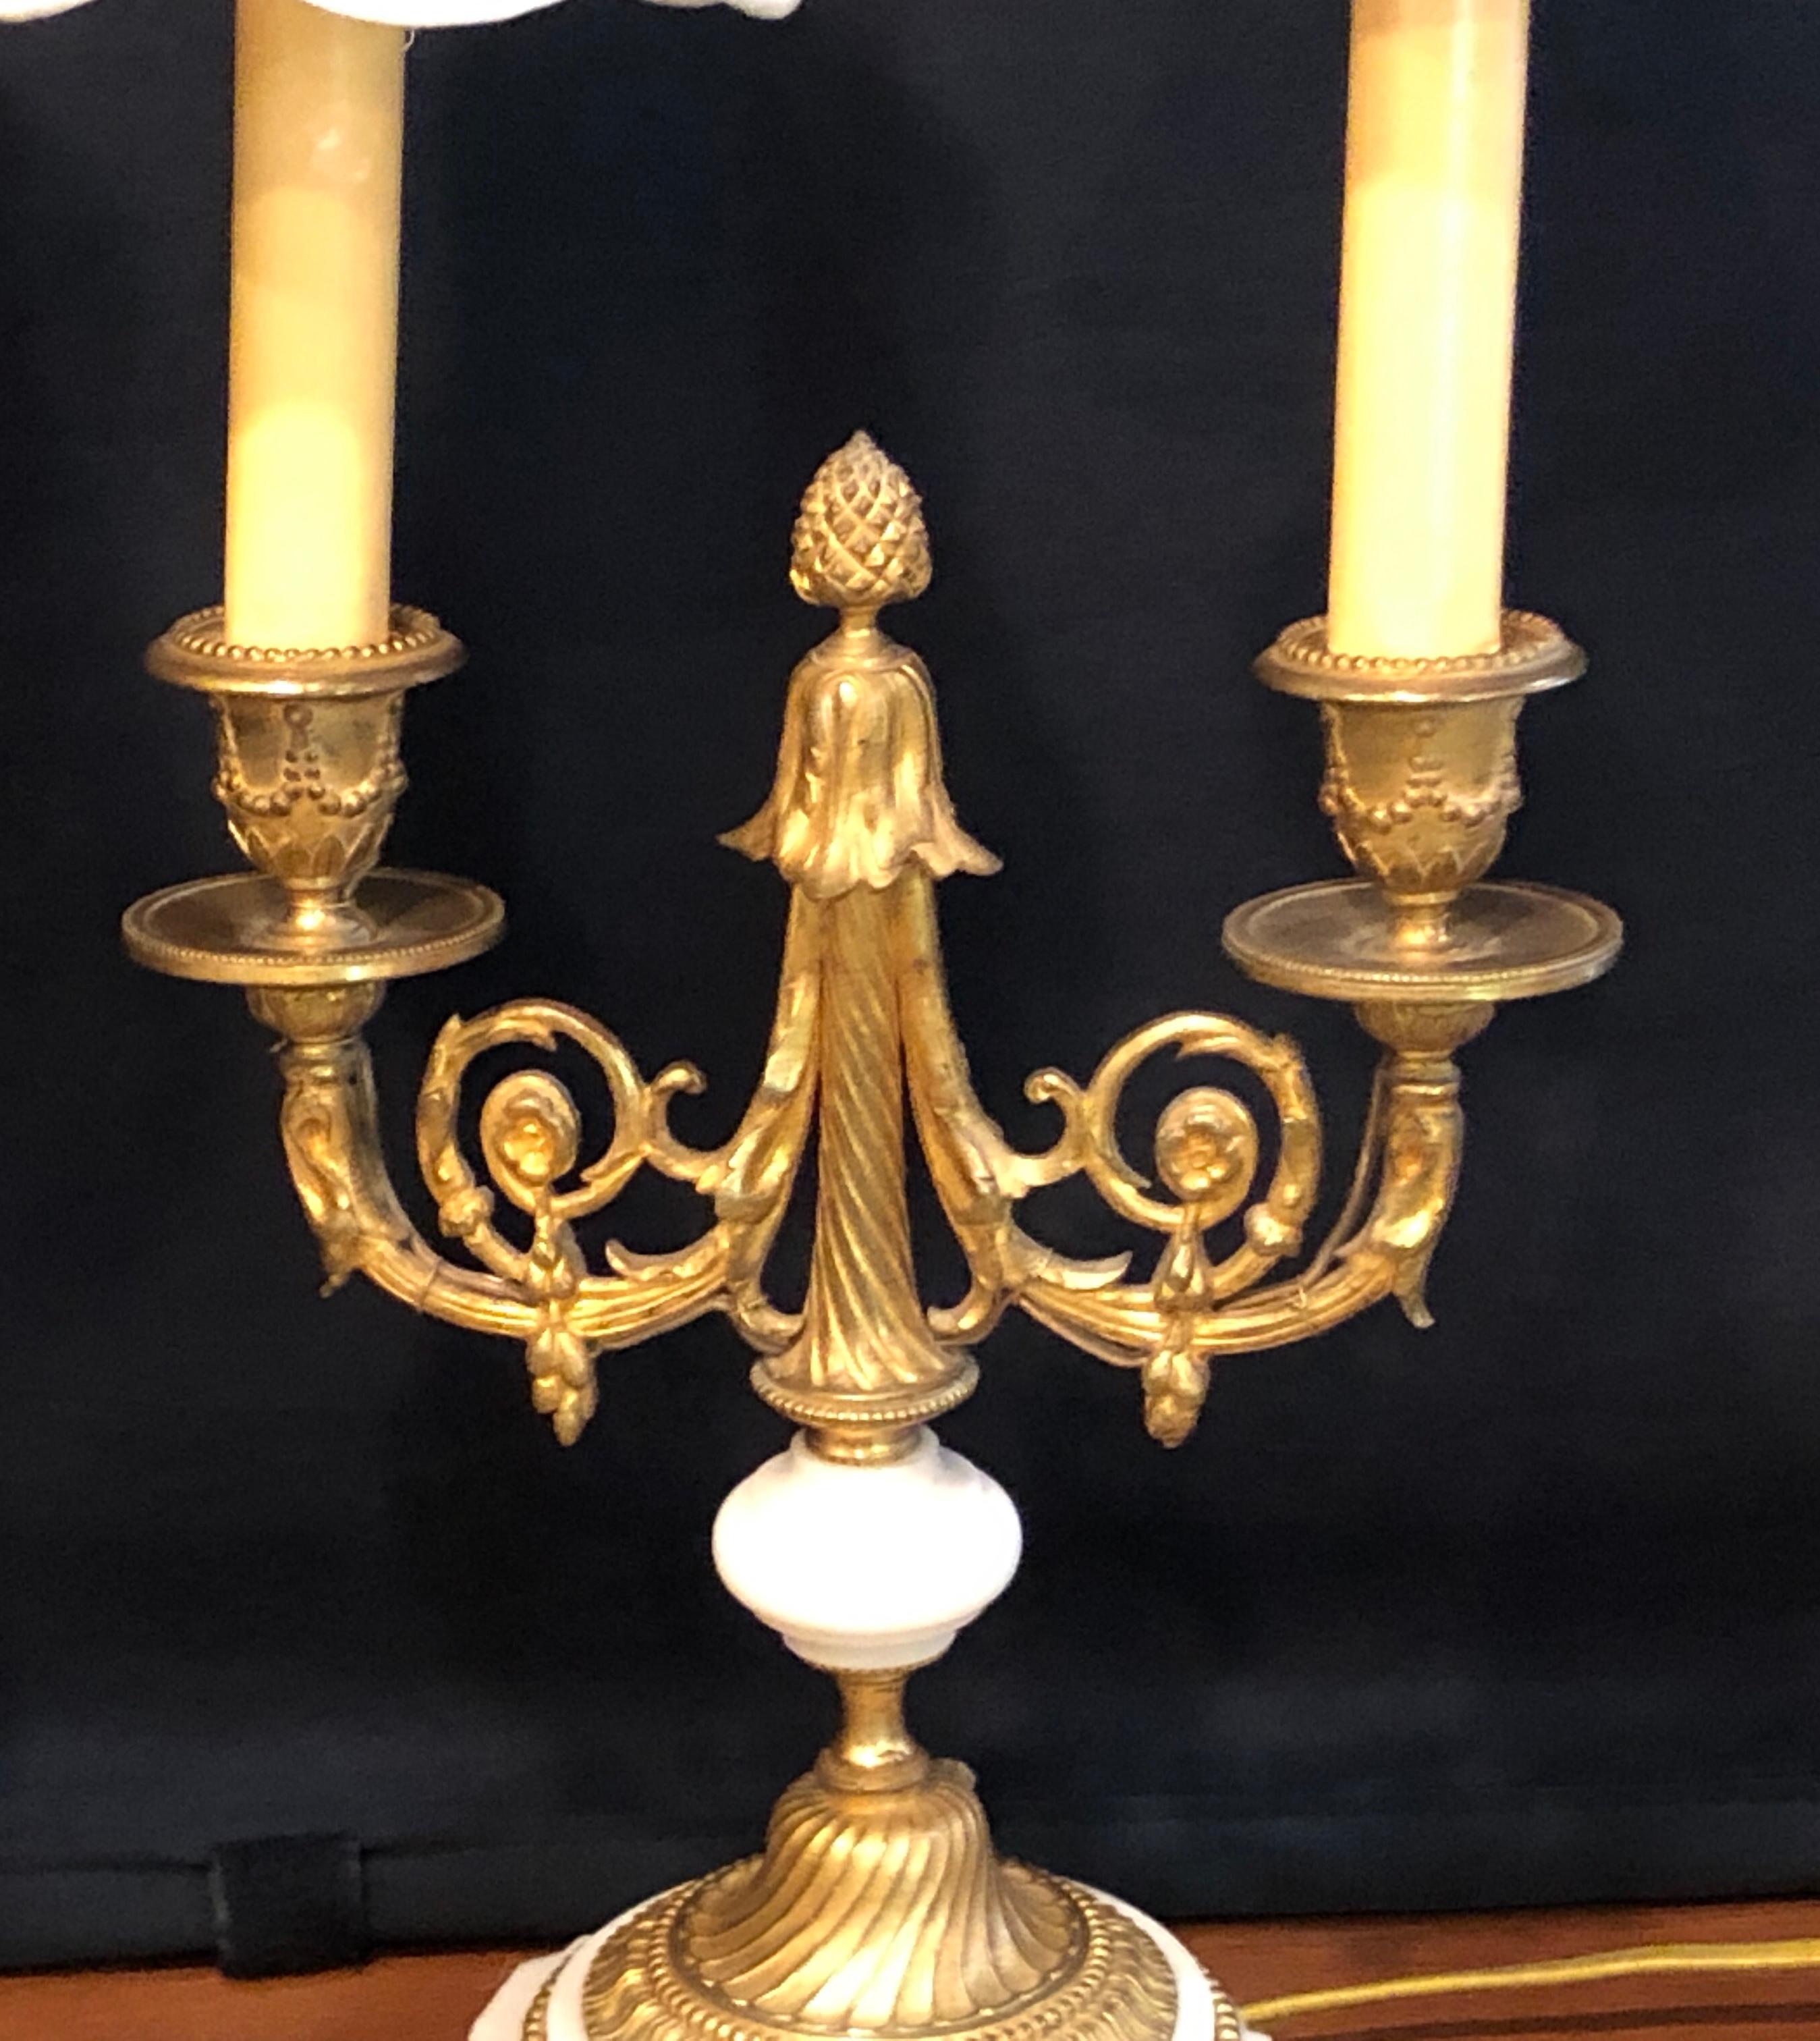 Zwei französische Kandelaber oder Tischlampen im Stil Louis XVI aus Doré-Bronze und Marmor. Diese feinen Tischlampen aus dem 19. und frühen 20. Jahrhundert sind einfach atemberaubend, mit den feinsten Doré-Bronzegüssen, die man sich wünschen kann.